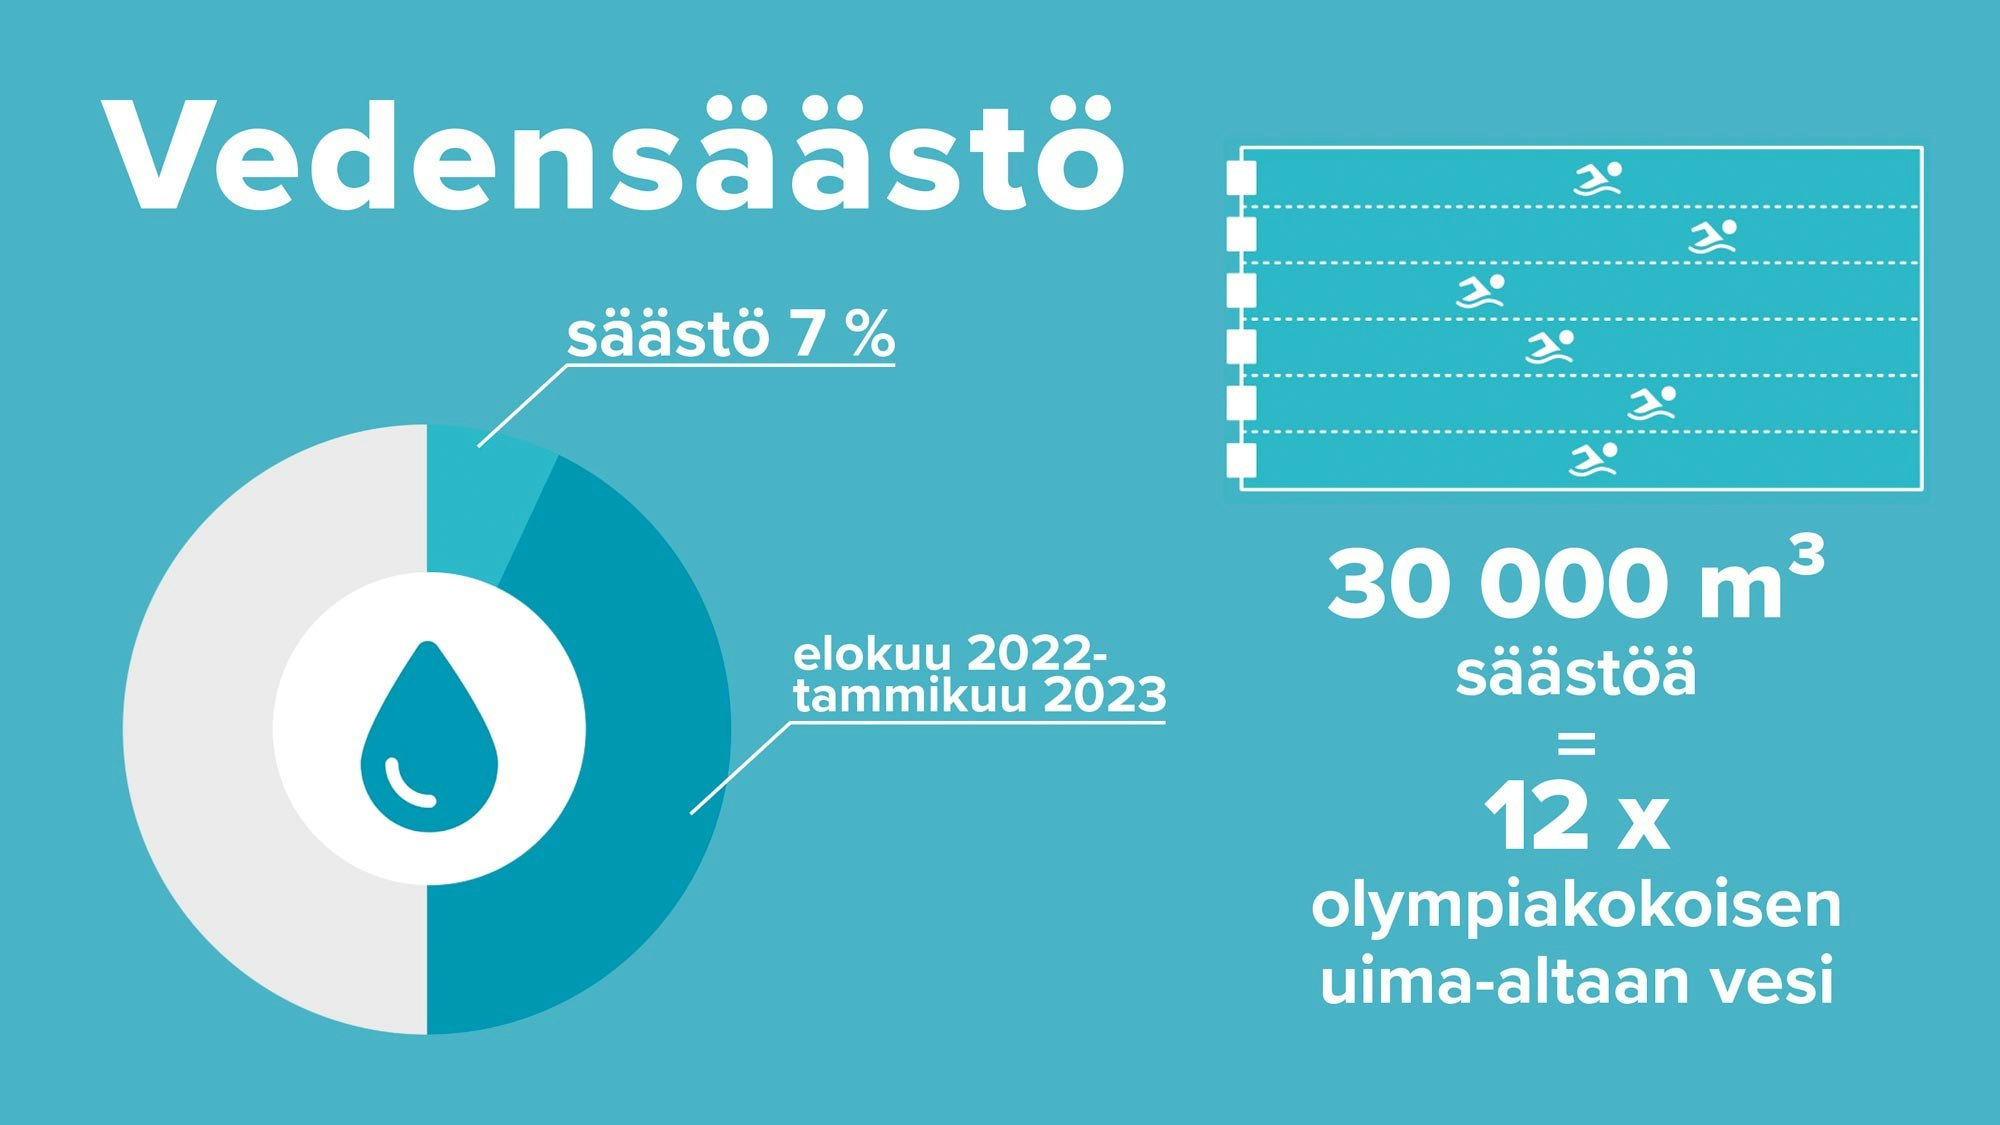 Vedensäästö elokuu 2022-tammikuu 2023 oli 7 % eli säästöä oli 12 olympiakokoisen uima-altaan verran (30 000 m2).